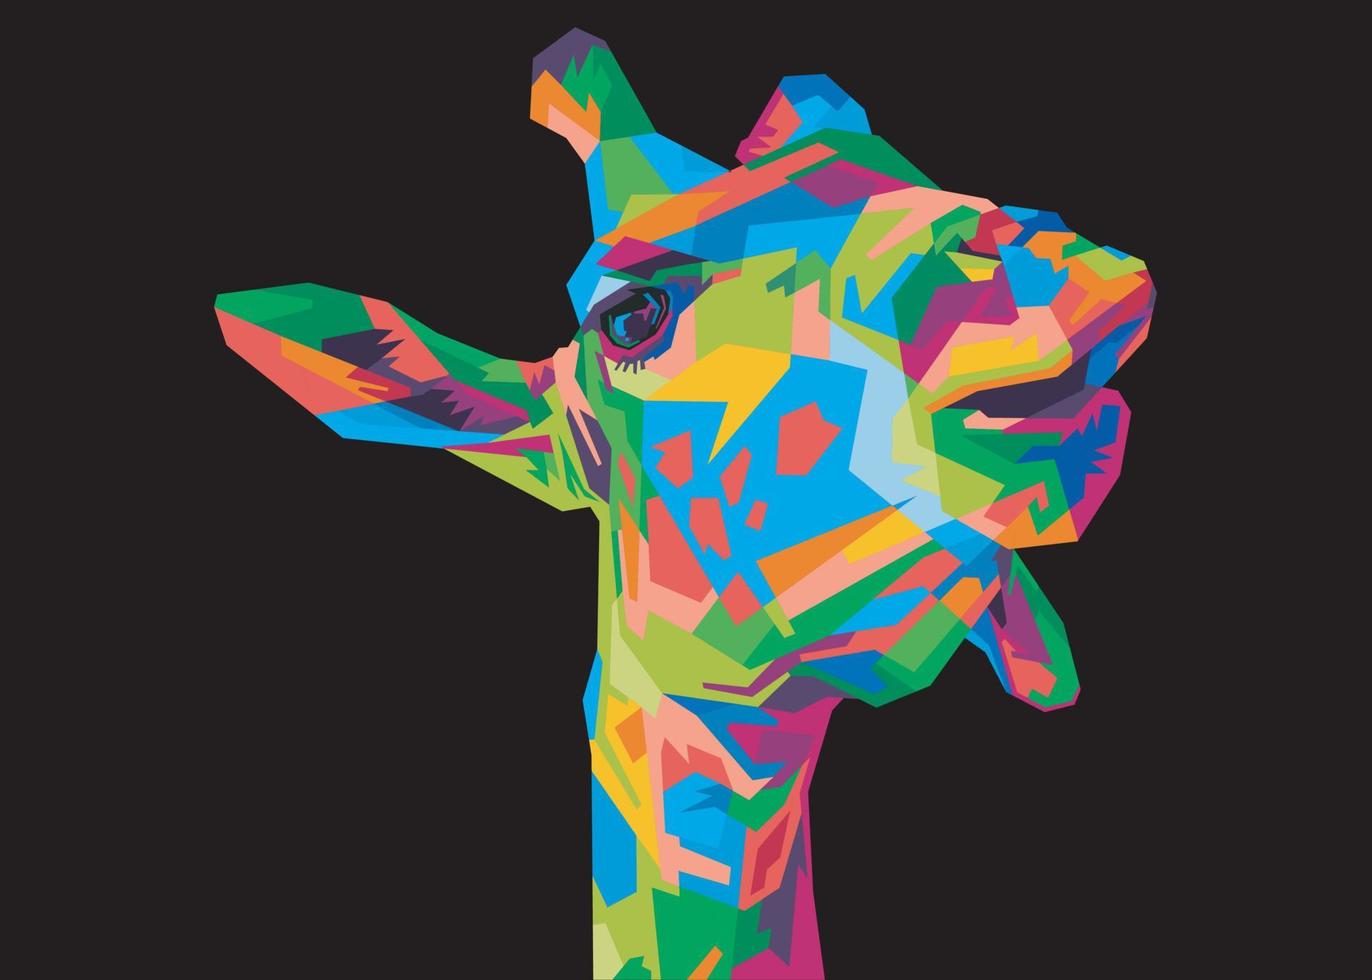 cabeza de jirafa colorida en estilo pop art aislada con fondo negro vector